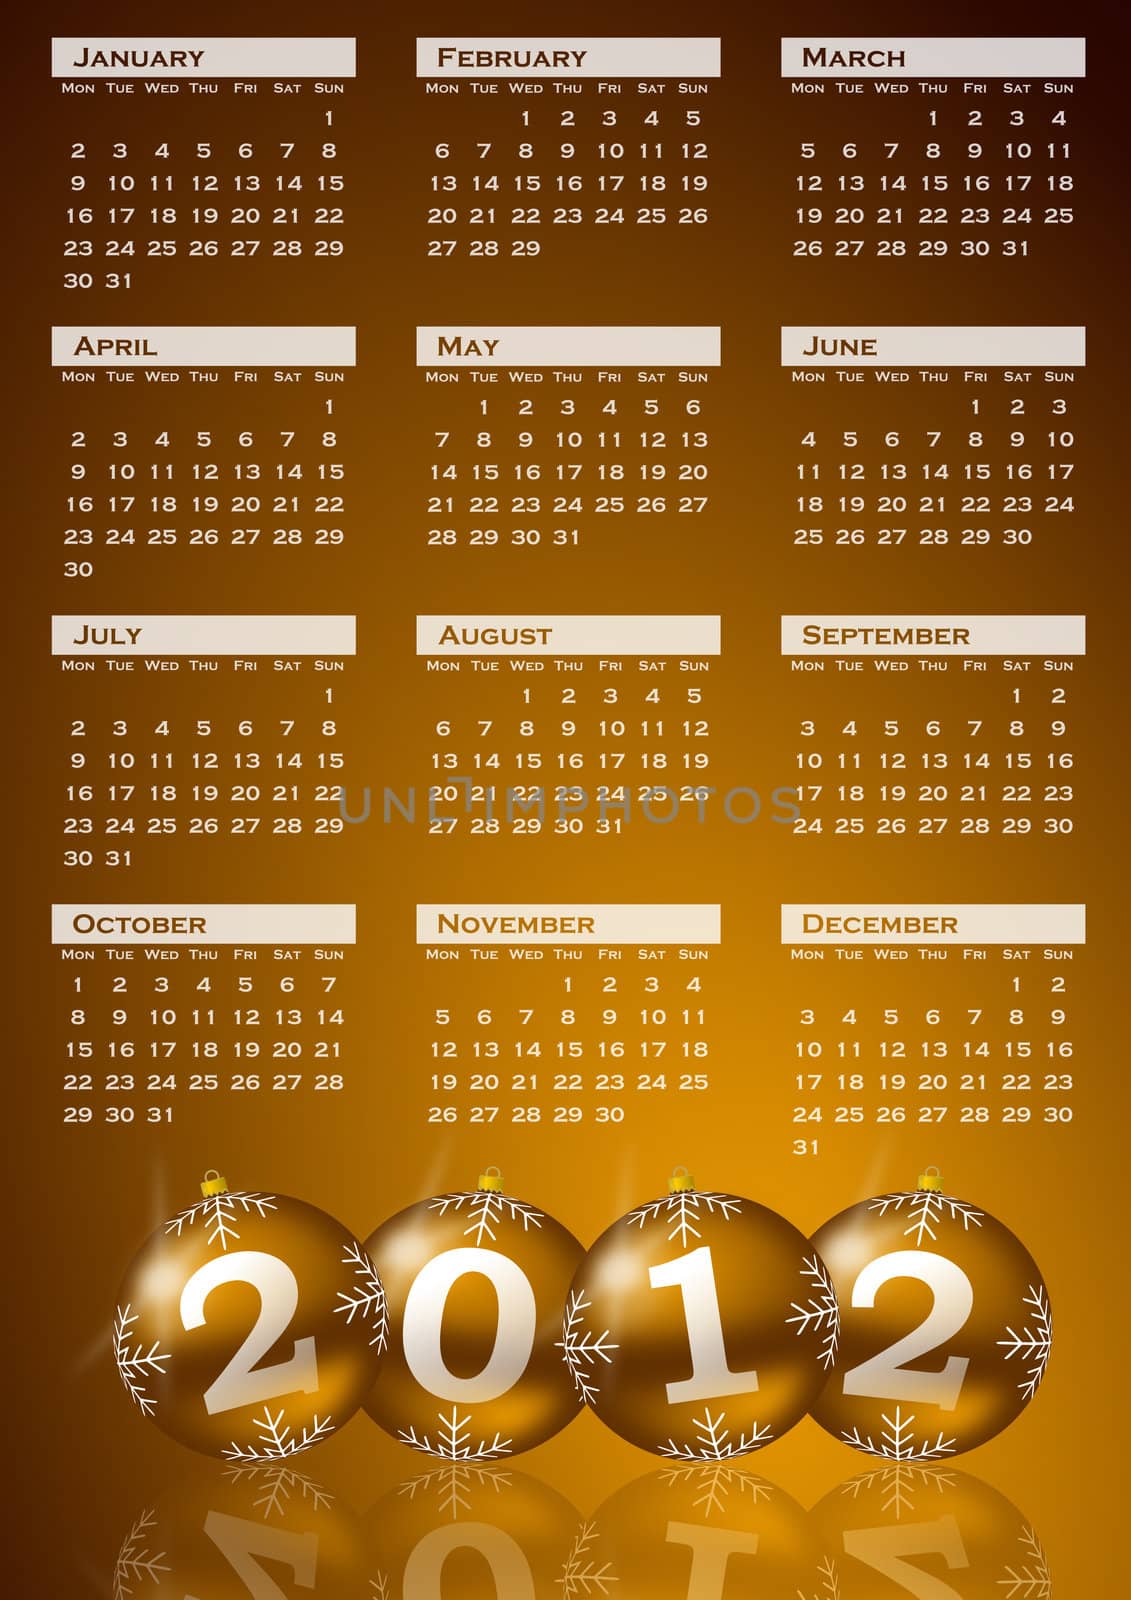 2012 calendar by alexwhite